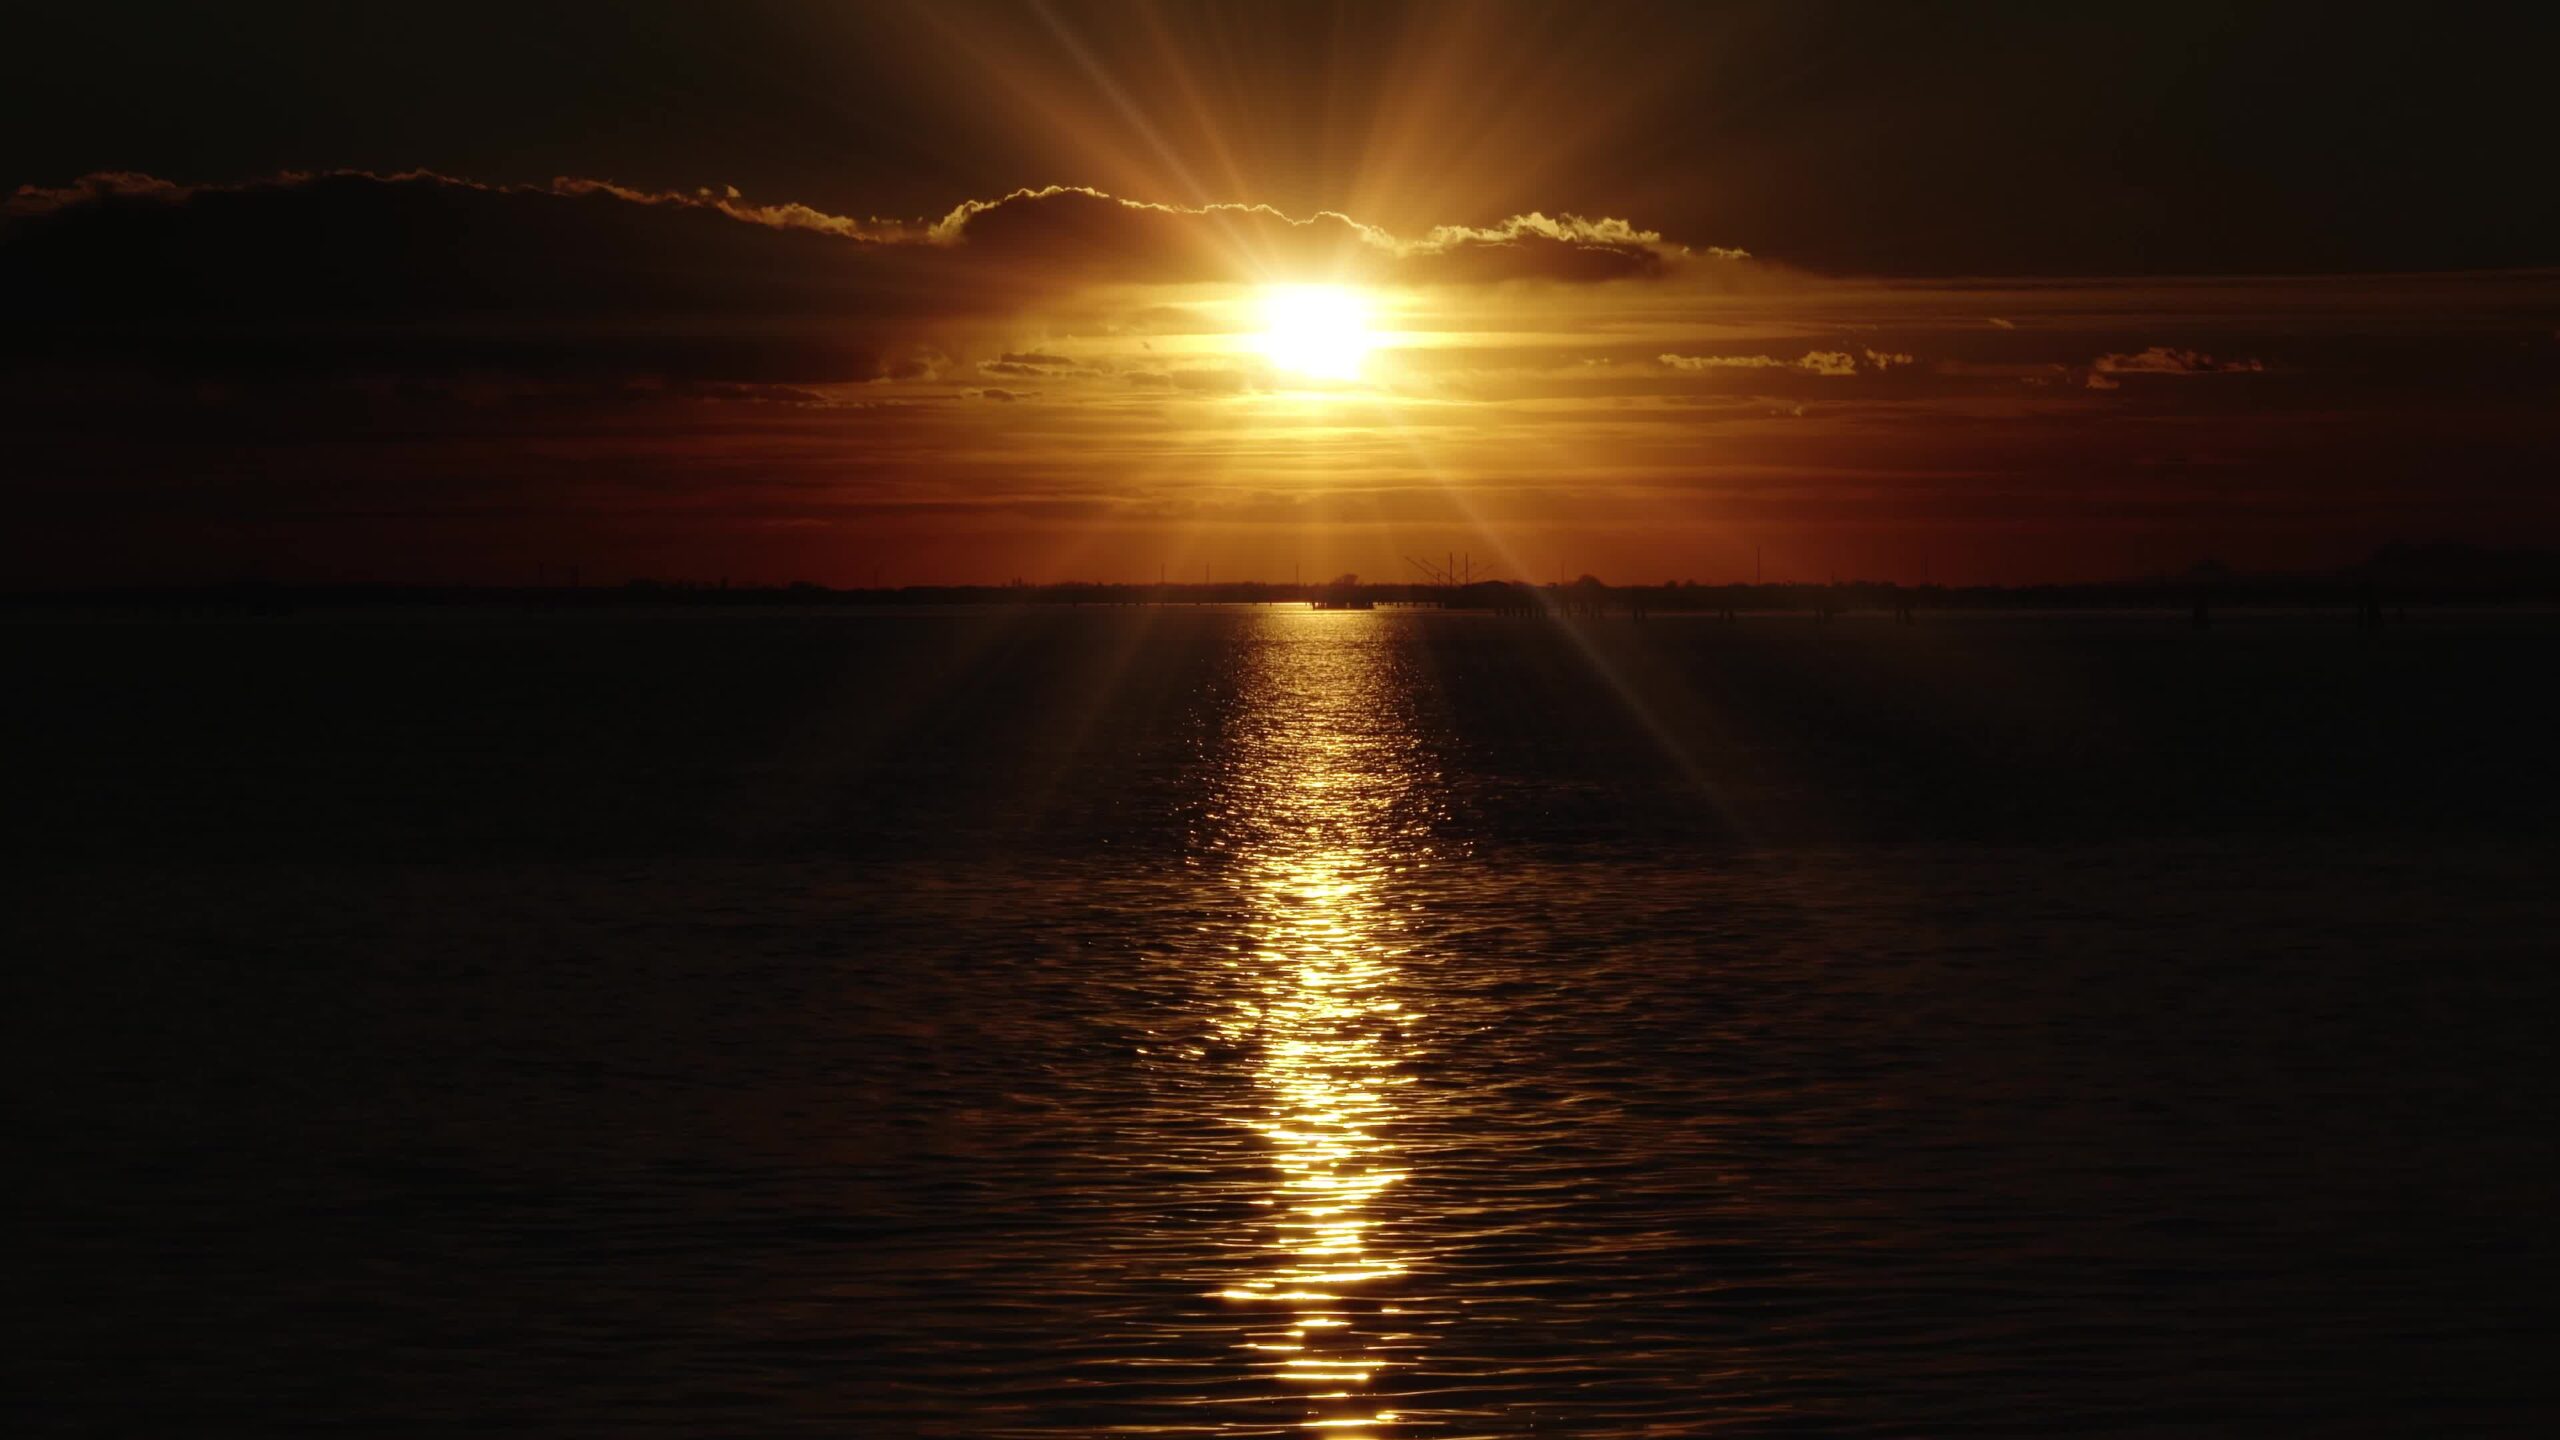 Il sole che tramonta all’orizzonte illumina il mare scuro con l’acqua increspata